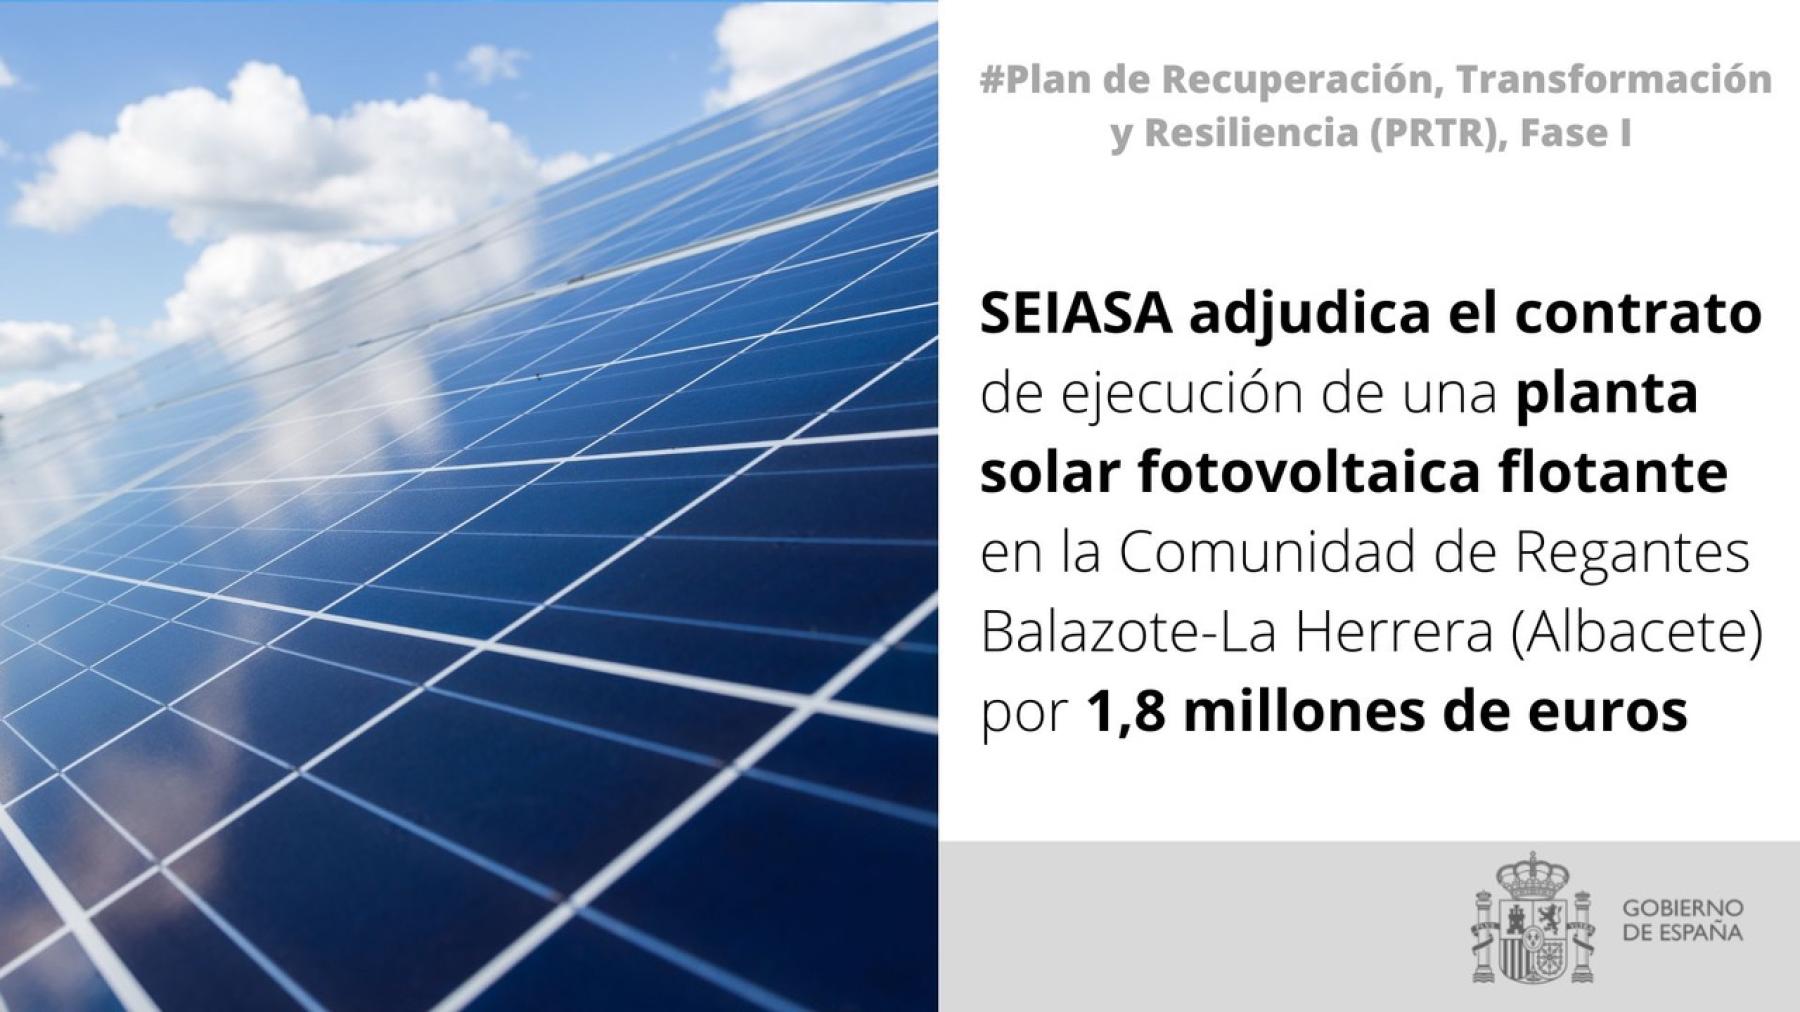 SEIASA adjudica el contrato de ejecución de una planta solar fotovoltaica flotante en la  Comunidad de Regantes Balazote-La Herrera (Albacete) por 1,8 millones de euros